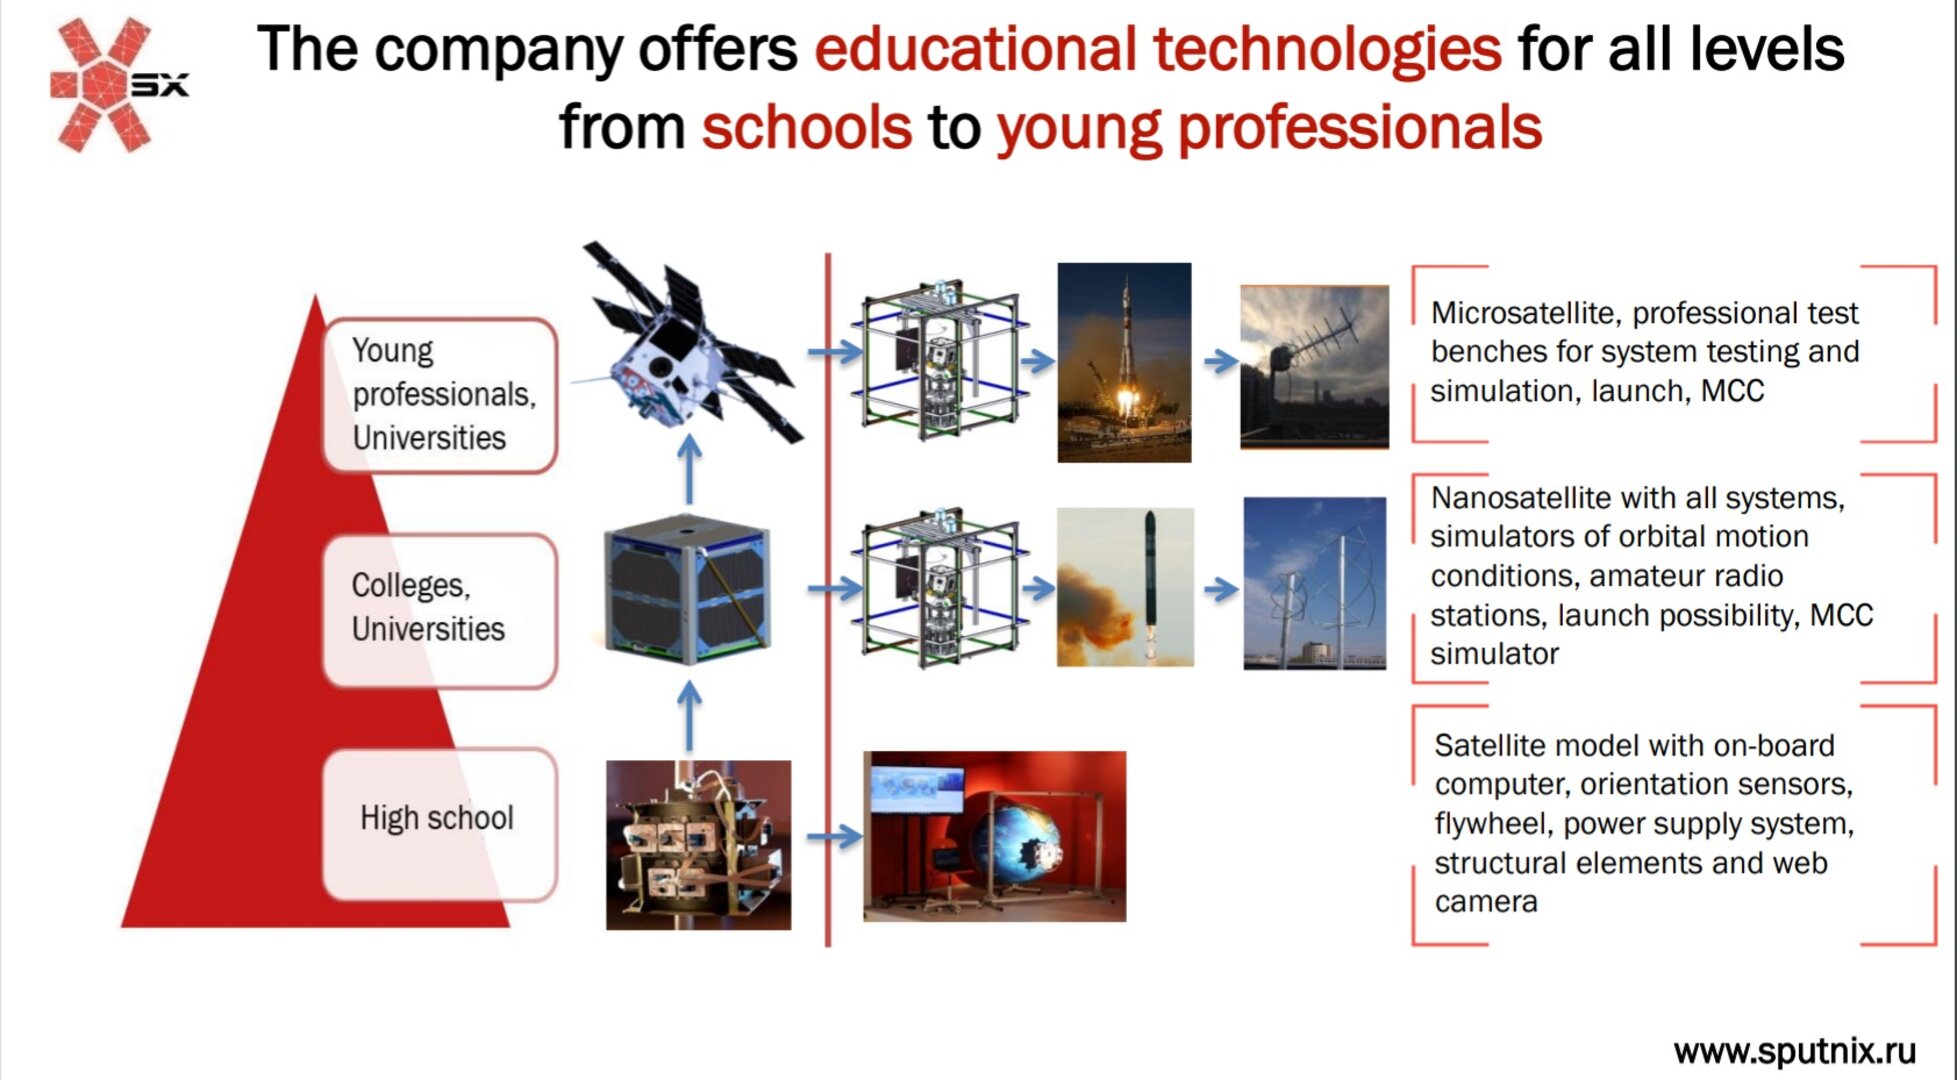 Sputnix produces educational technologies